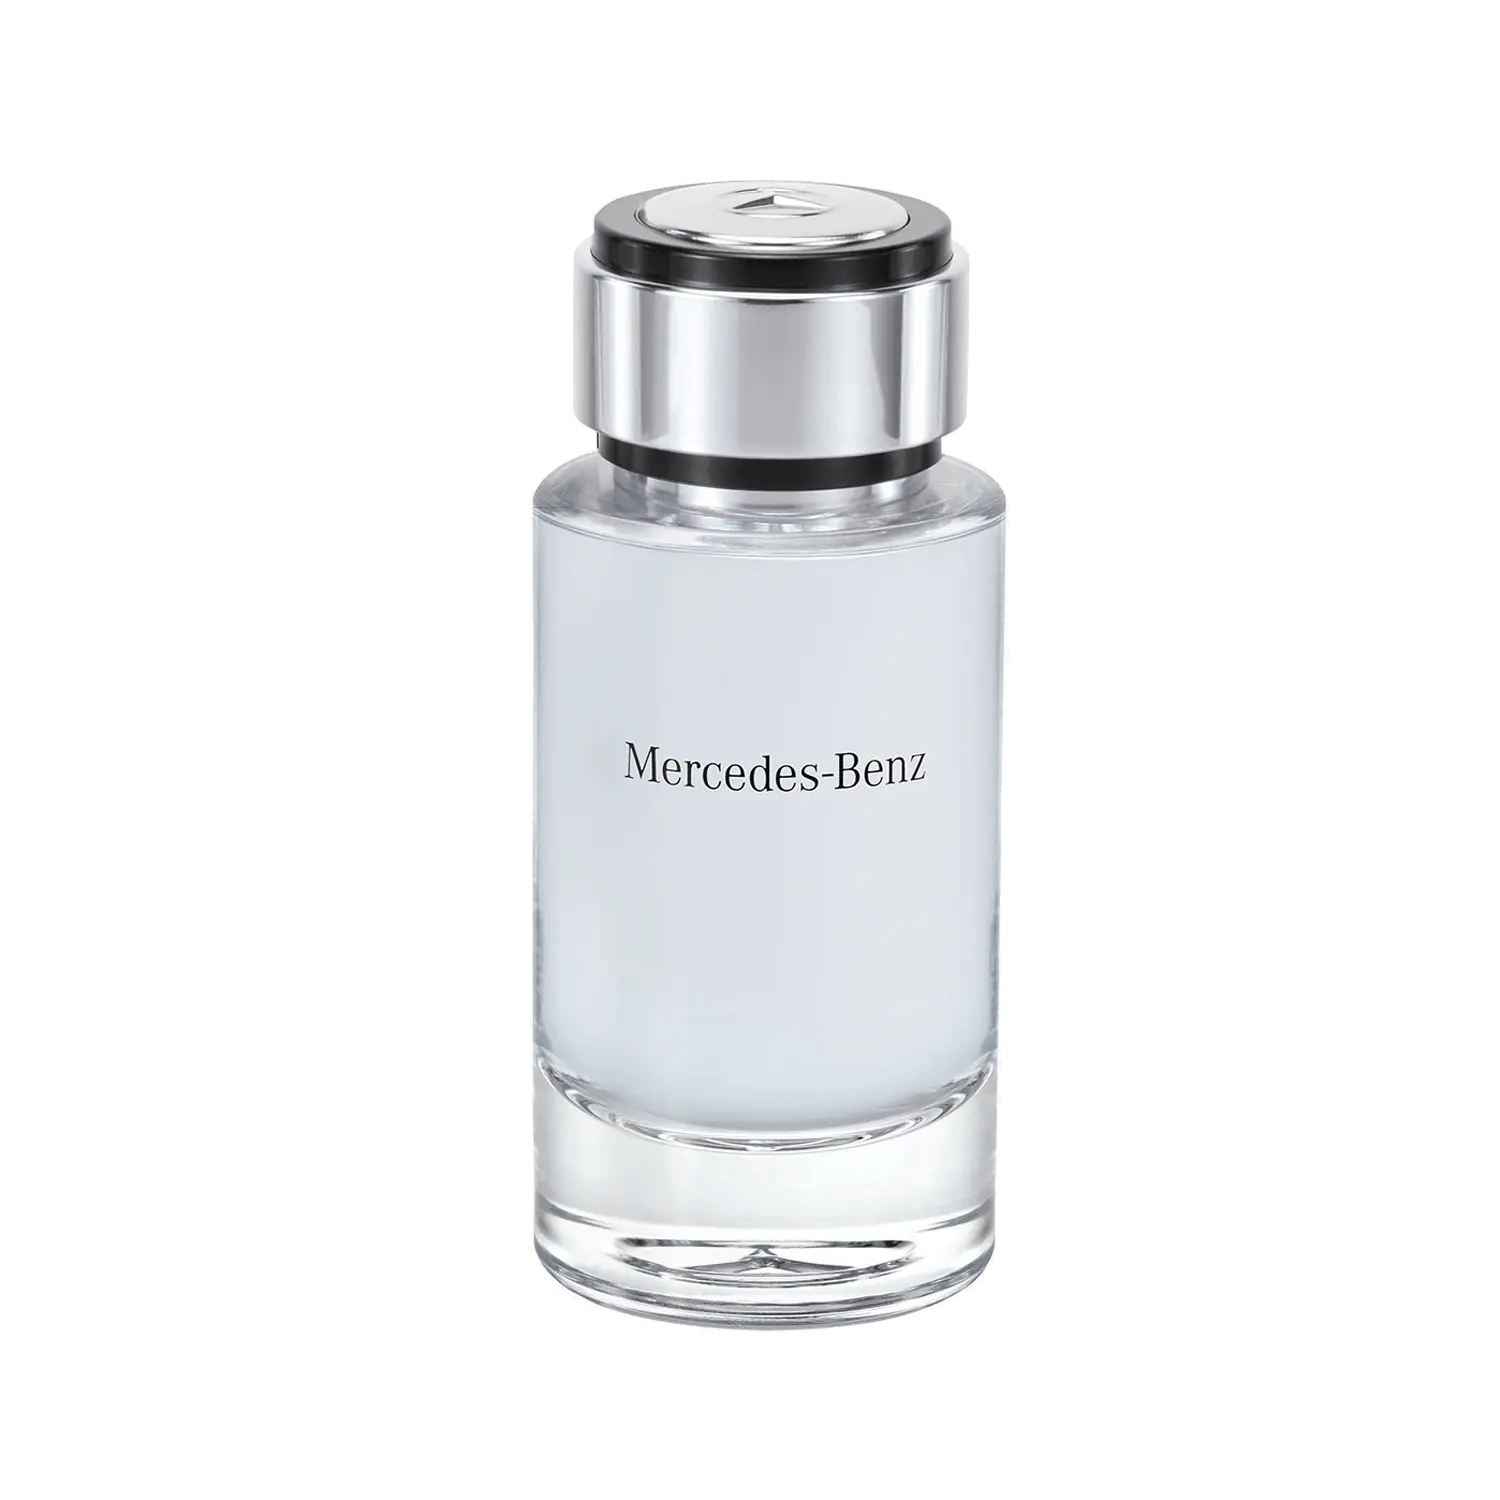 Parfum homme Mercedes Benz EDT Intense 120 ml